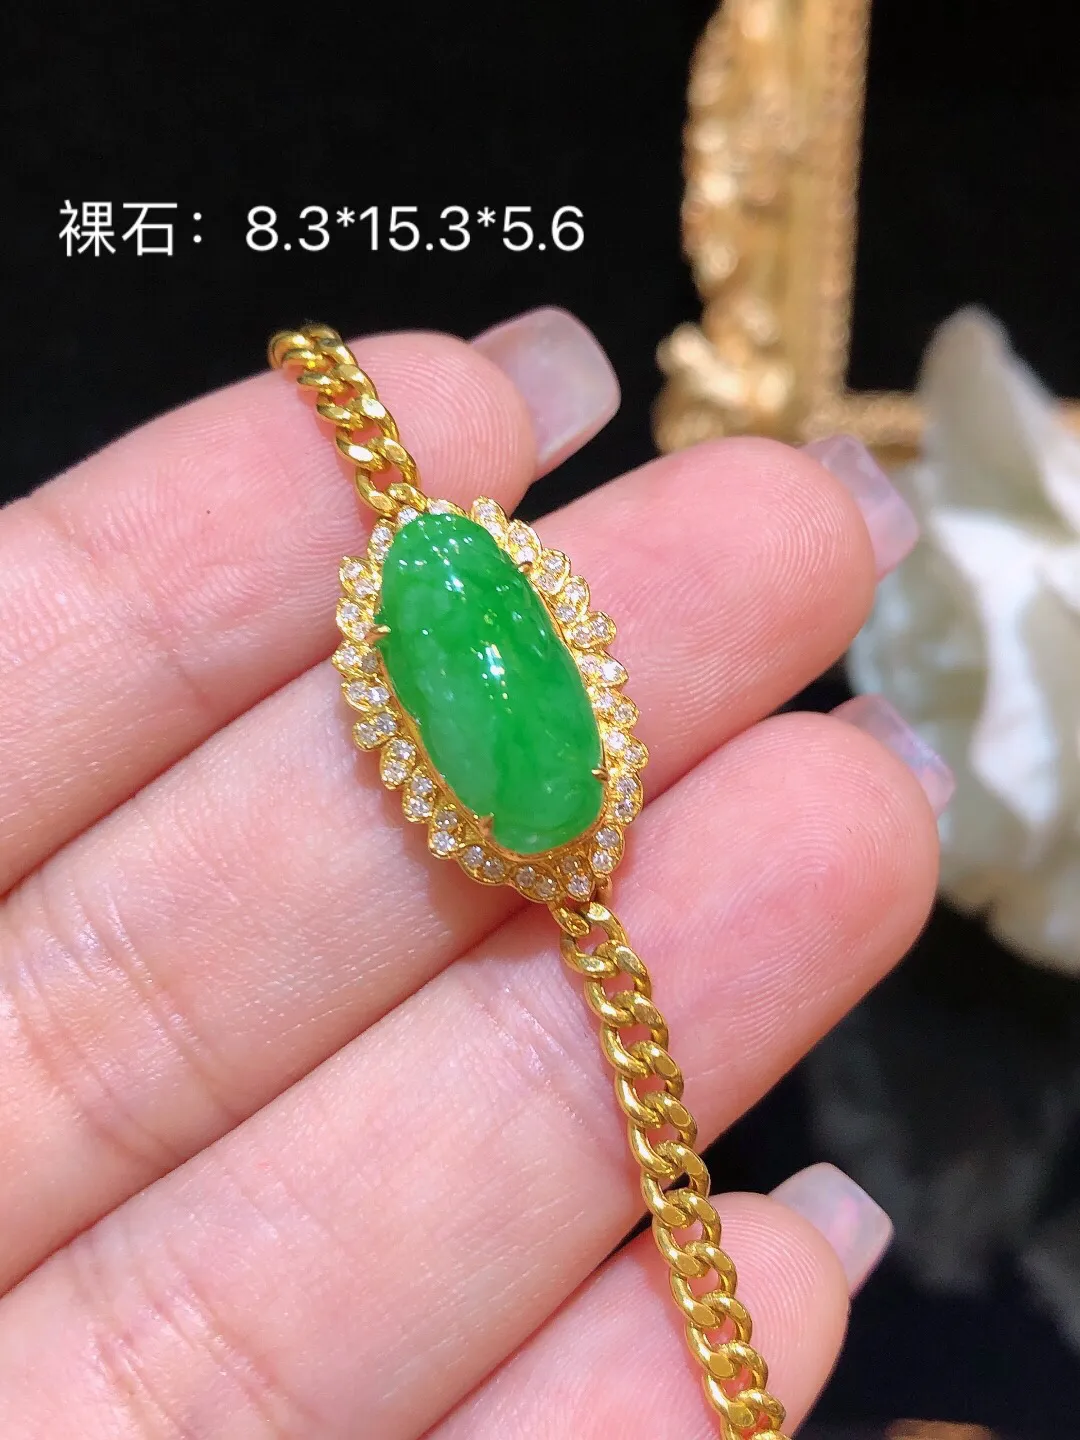 翡翠阳绿貔貅手链 雕工精美 颜色细腻 饱满圆润